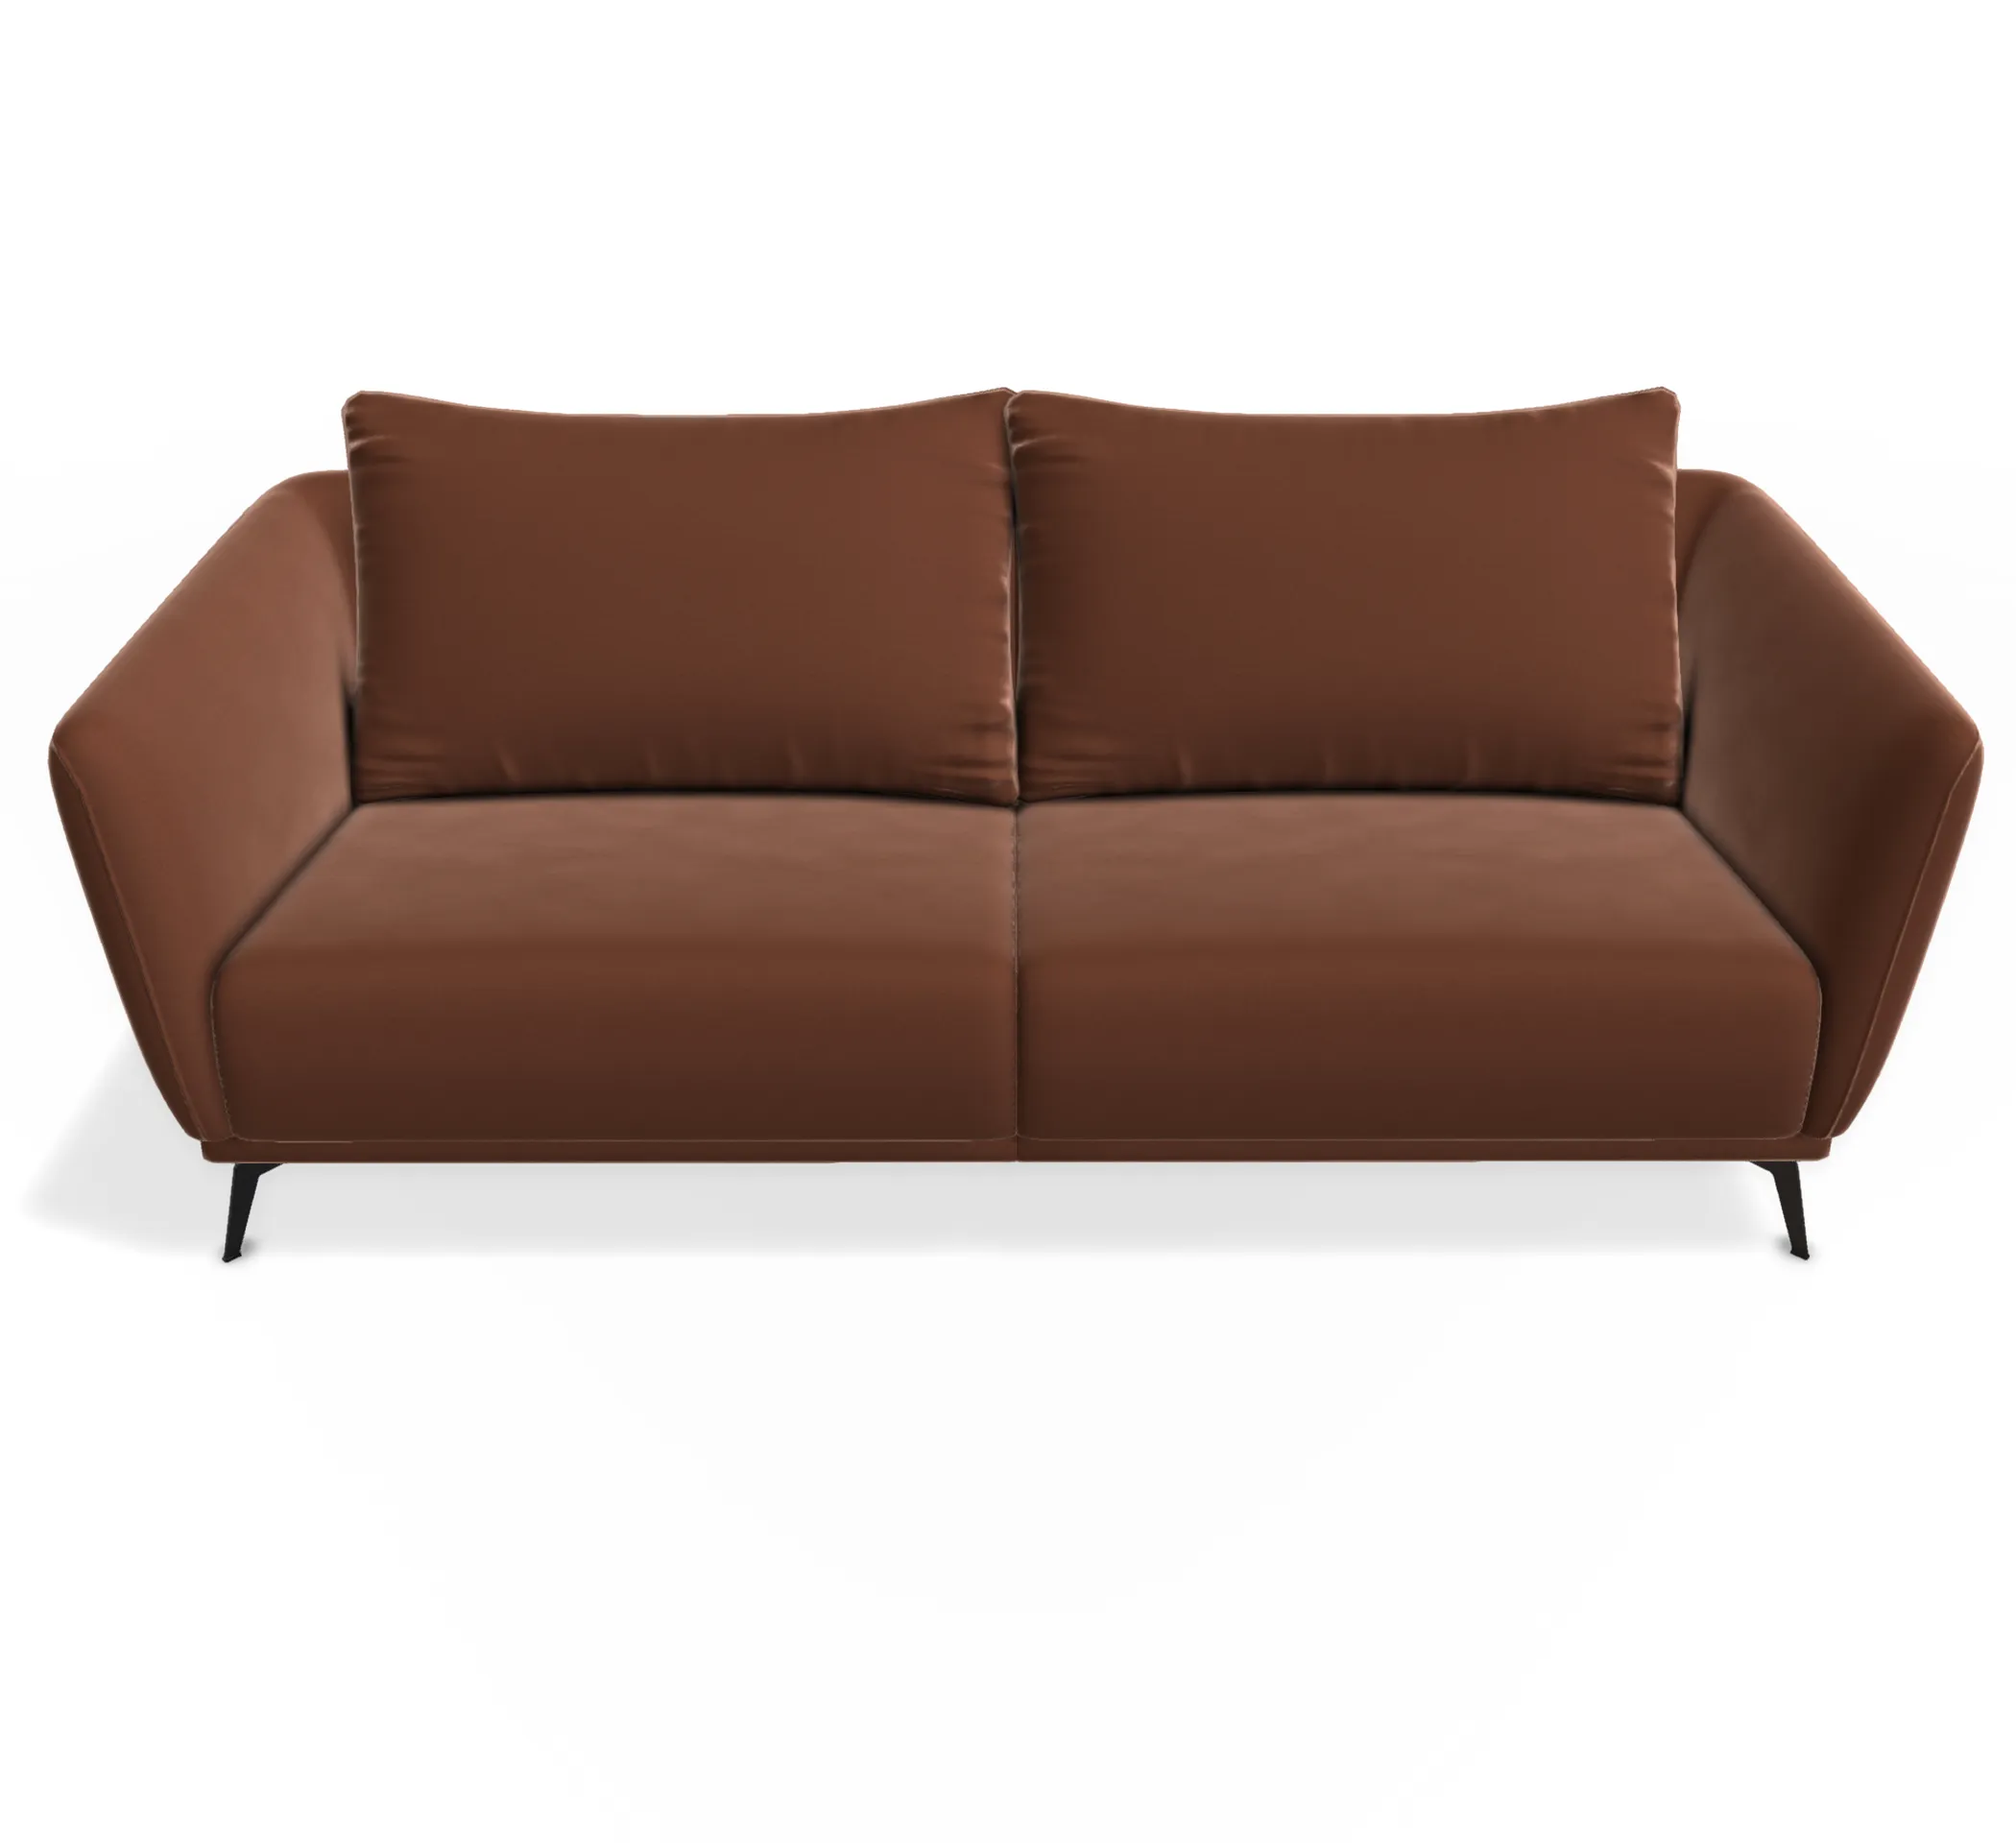 wundervolles 3-sitzer sofa für erhöhten komfort